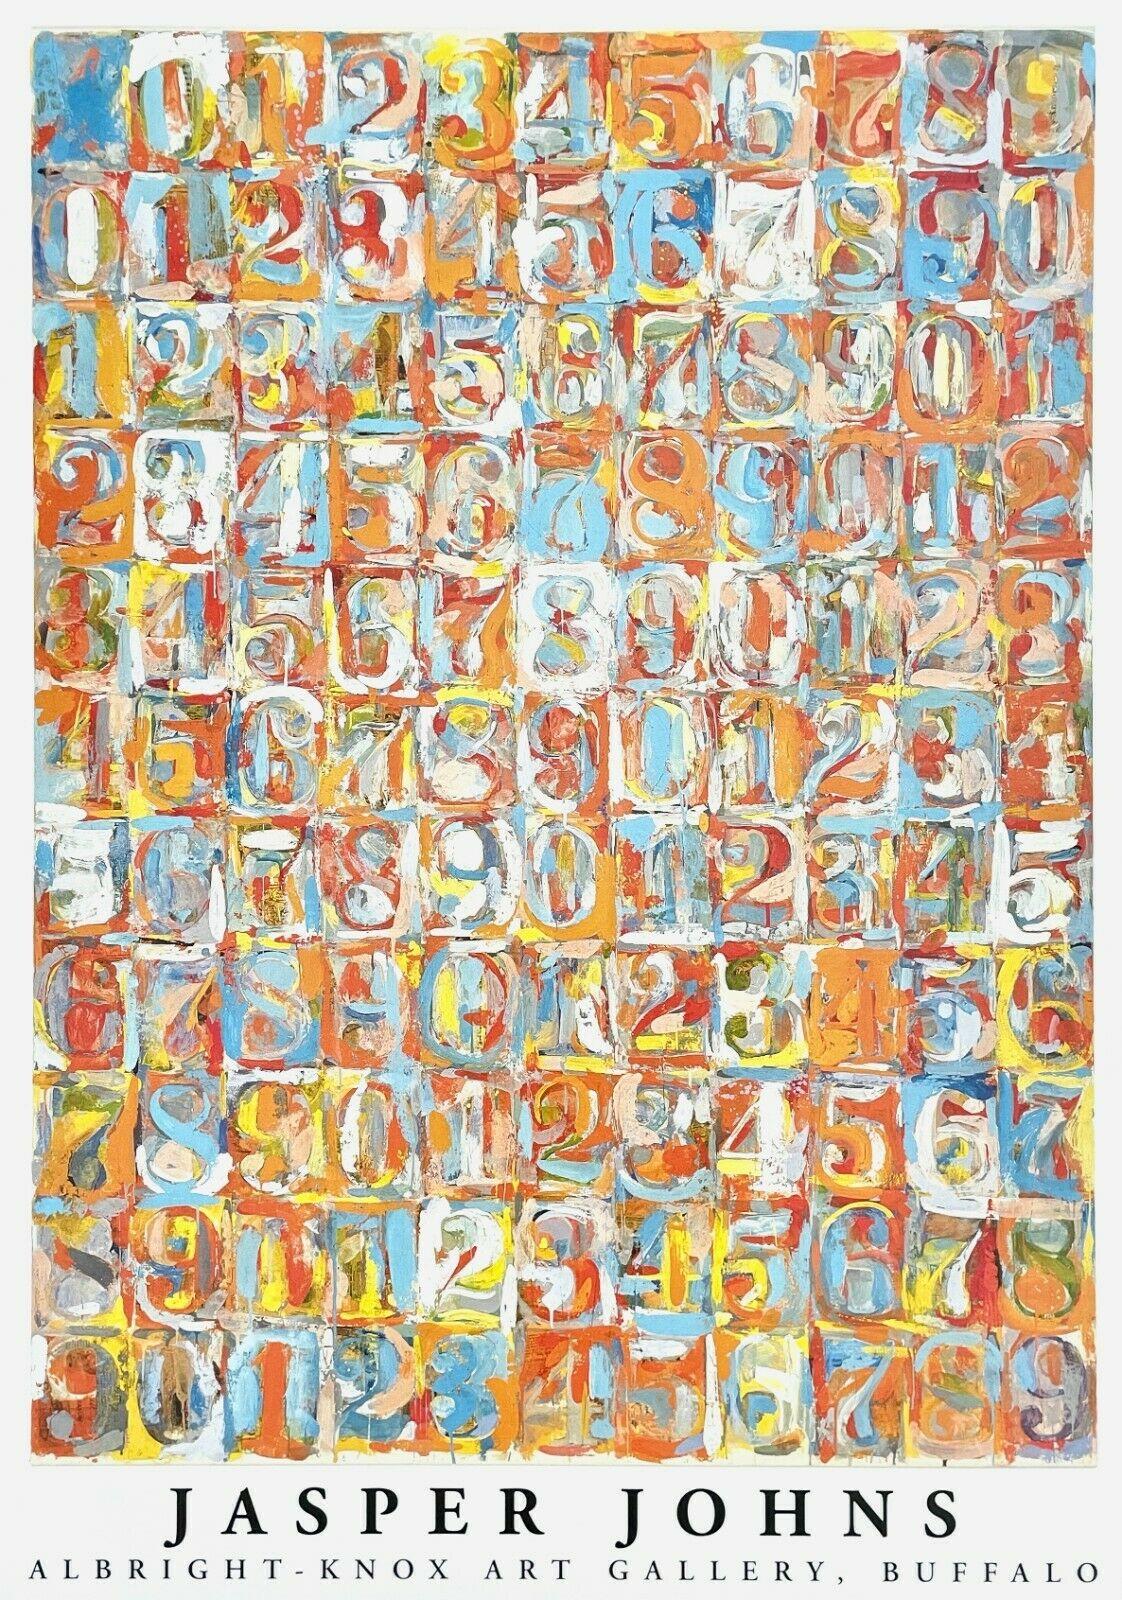 Numéros en couleur, 1981, Johns - Print de Jasper Johns